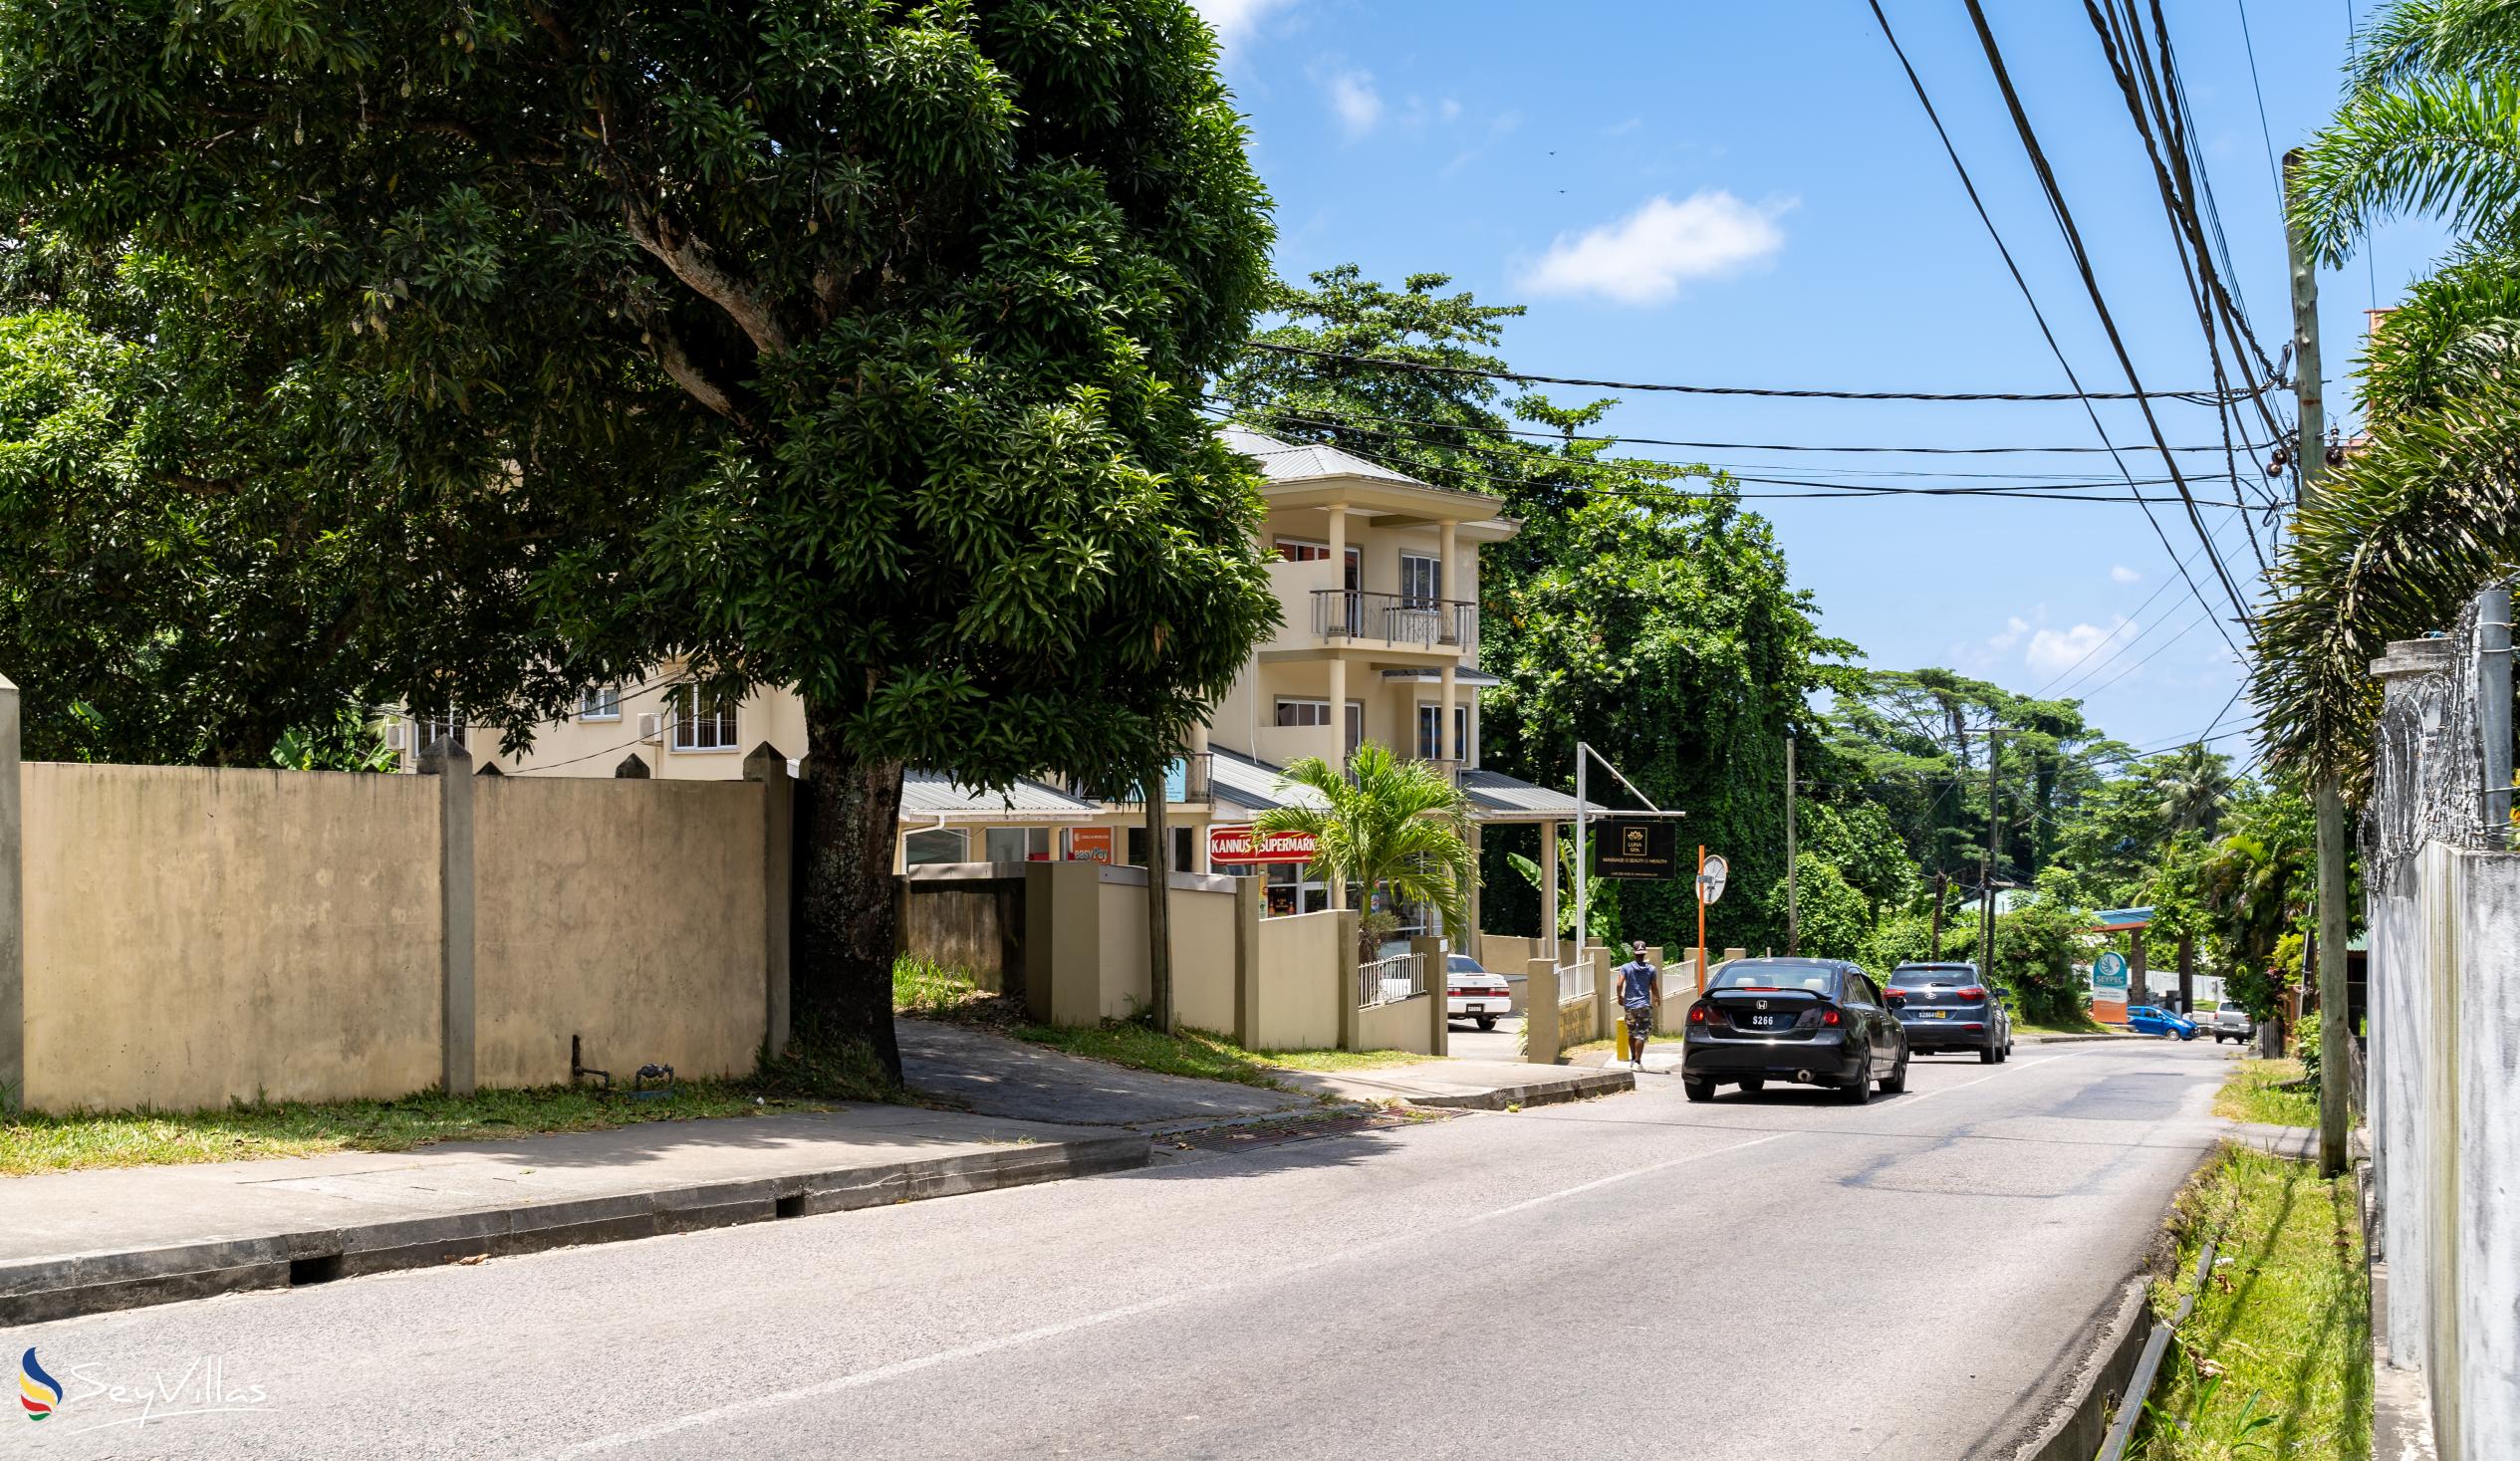 Foto 19: Tama's Holiday Apartments - Location - Mahé (Seychelles)